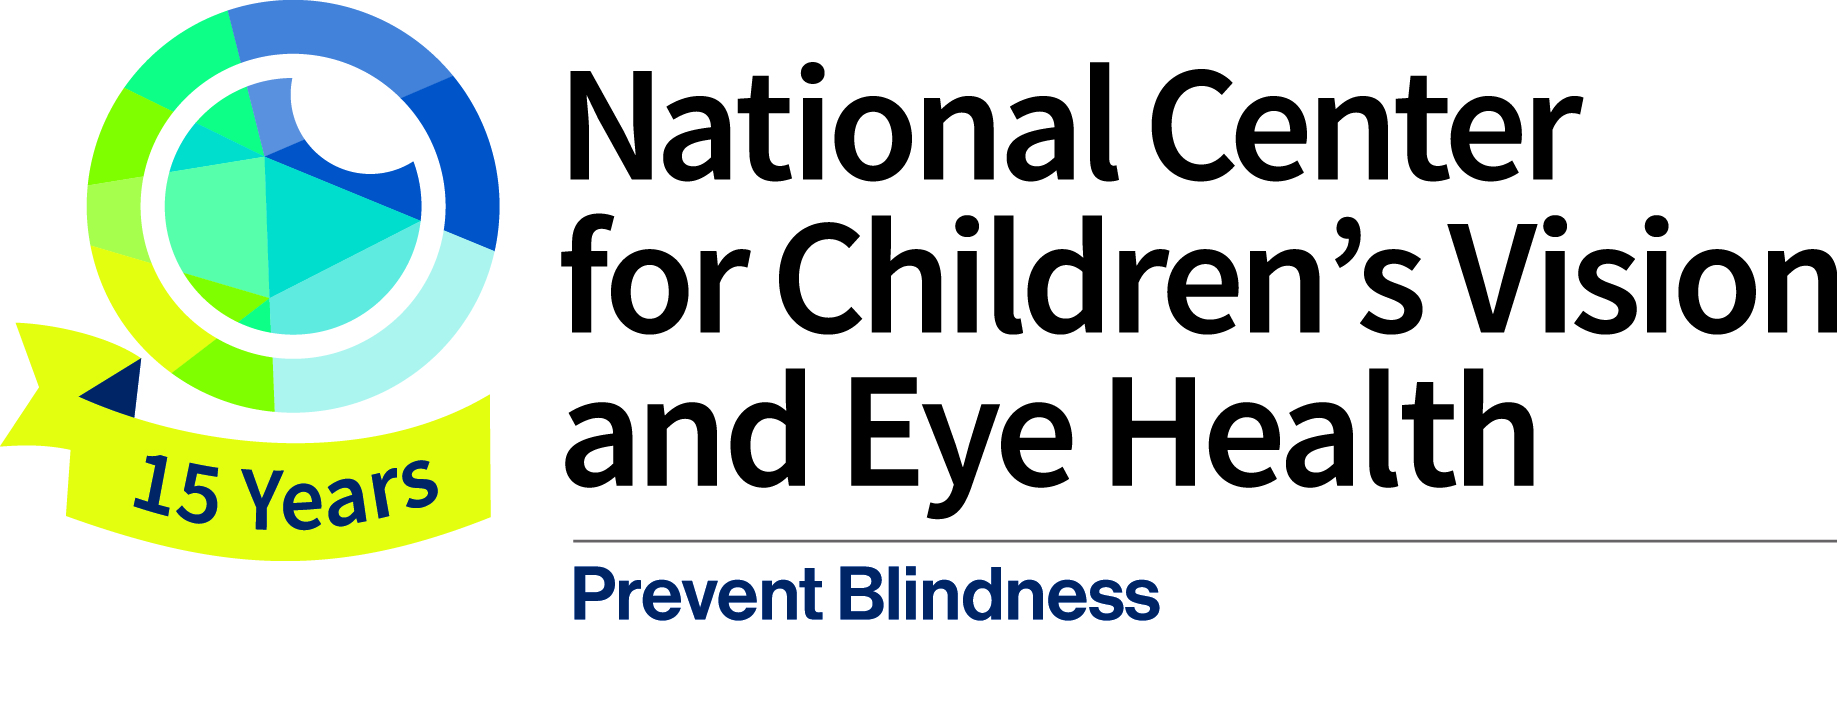 Prevent Blindness Logo